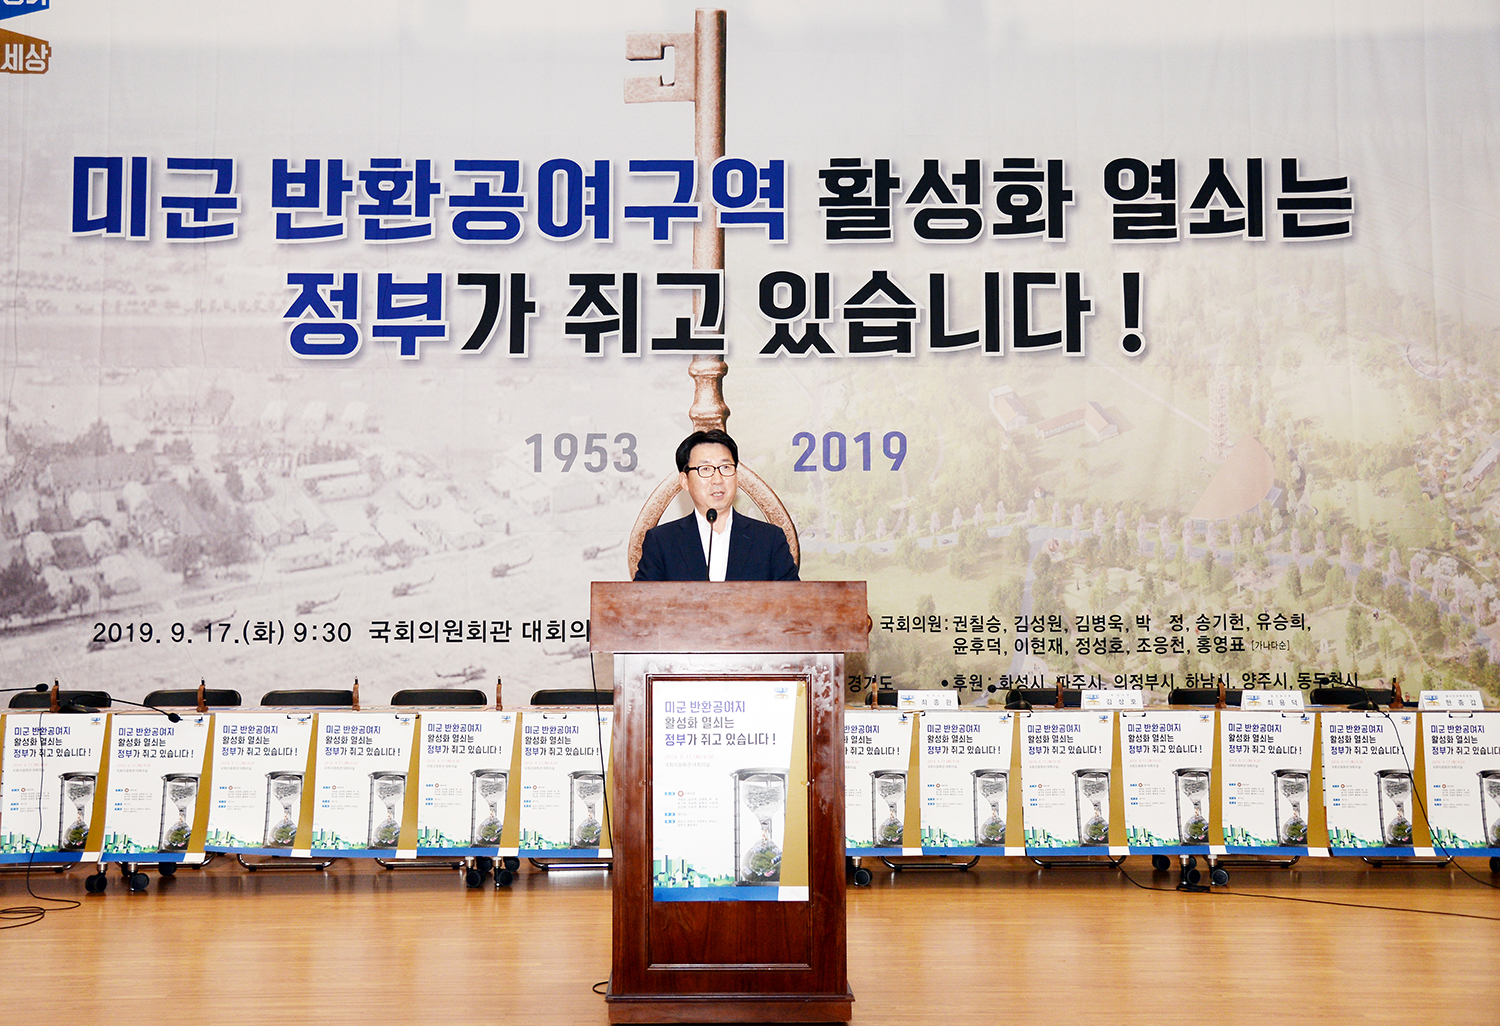 09-16 주한미군 반환공여구역 개발 활성화방안 국회토론회